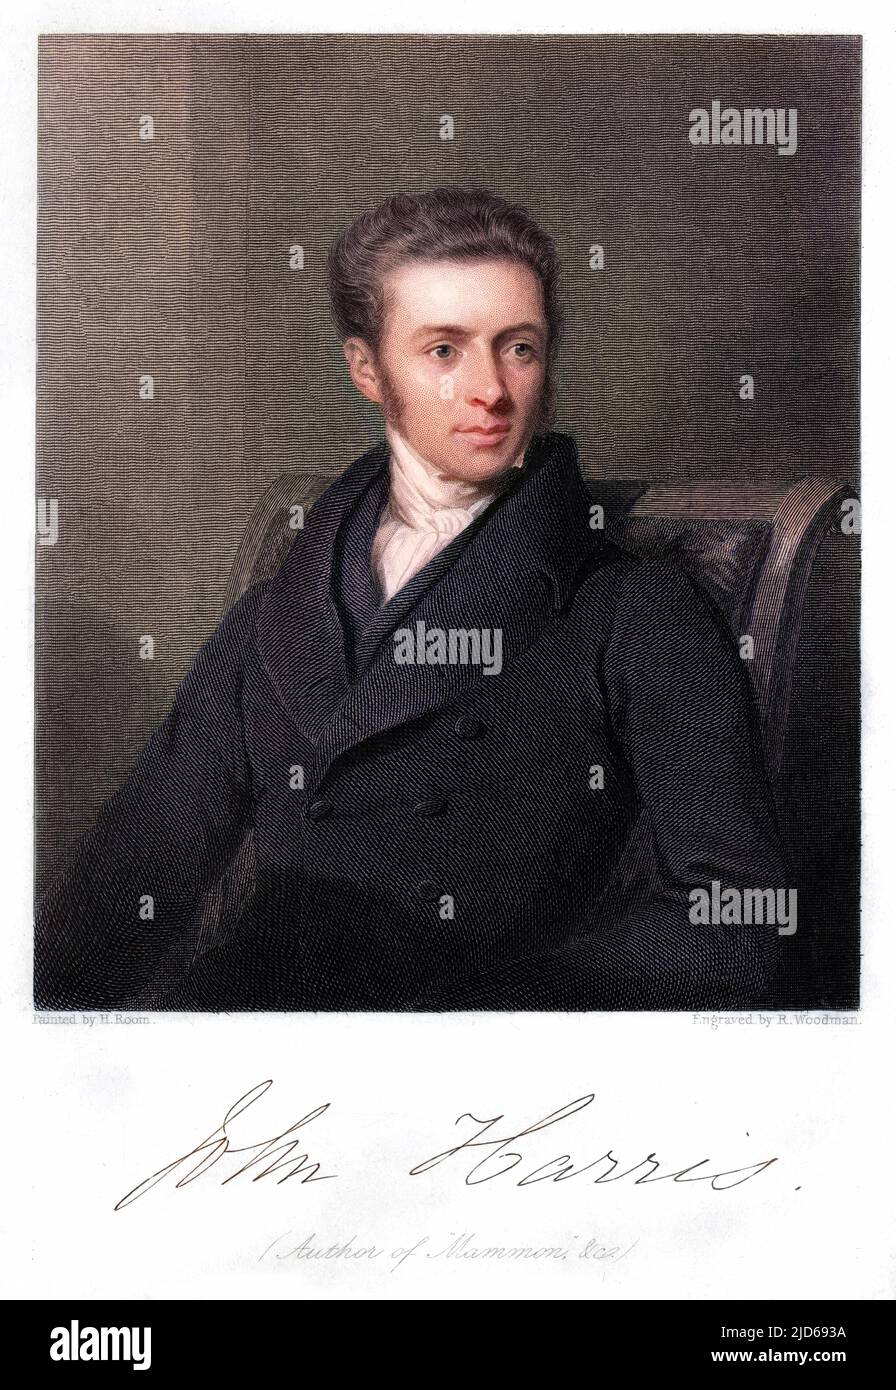 JOHN HARRIS Churchman : Rektor des New College, London, und Autor von 'Mammon' : sitzend. Mit seinem Autograph Colorized Version von : 10160415 Datum: 1802 - 1856 Stockfoto